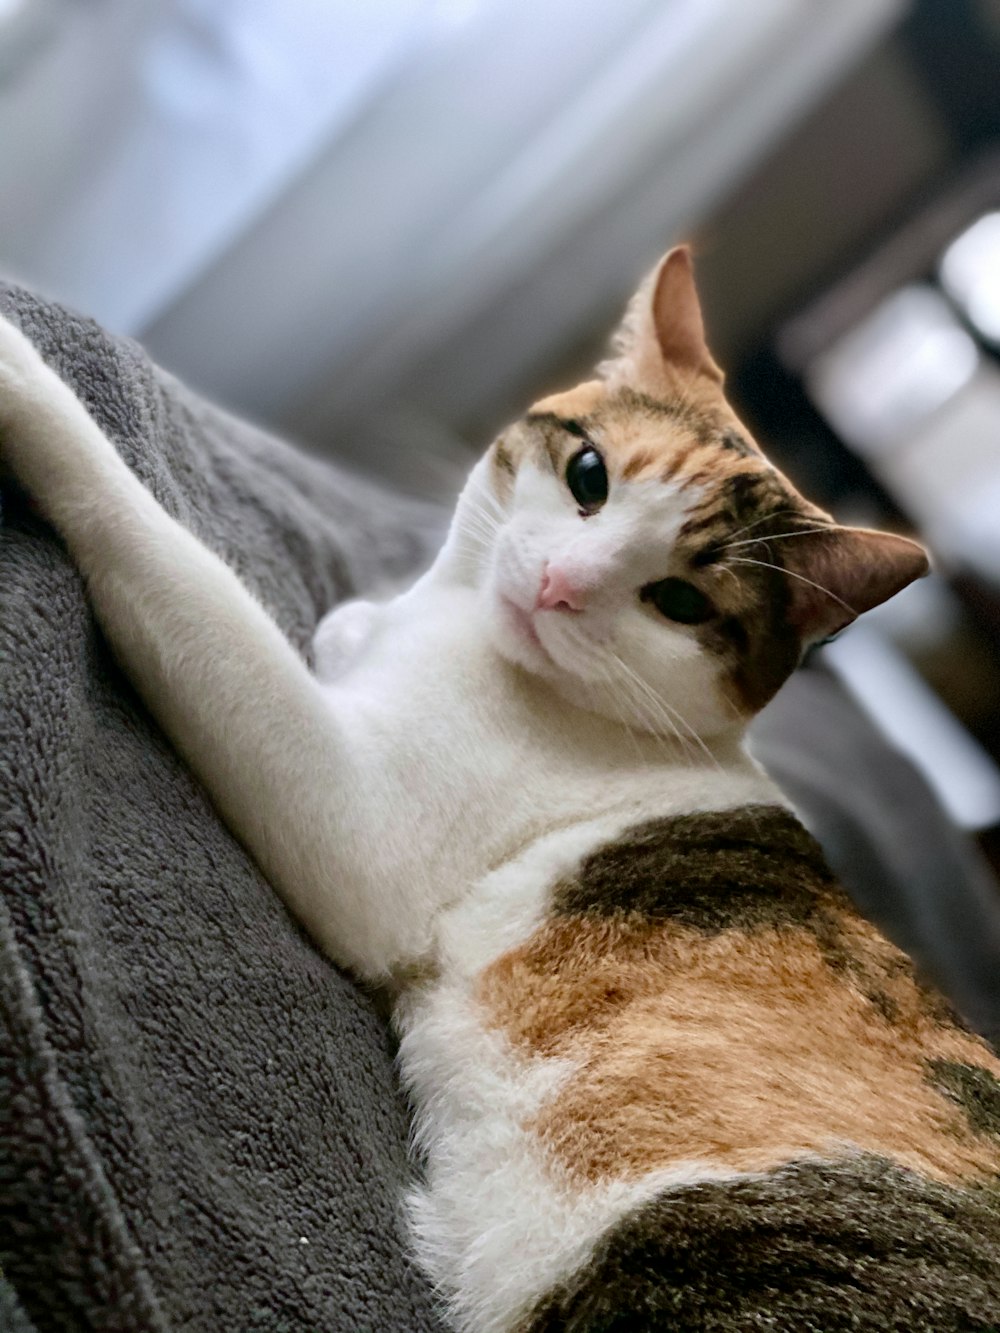 orange and white tabby cat lying on grey cushion